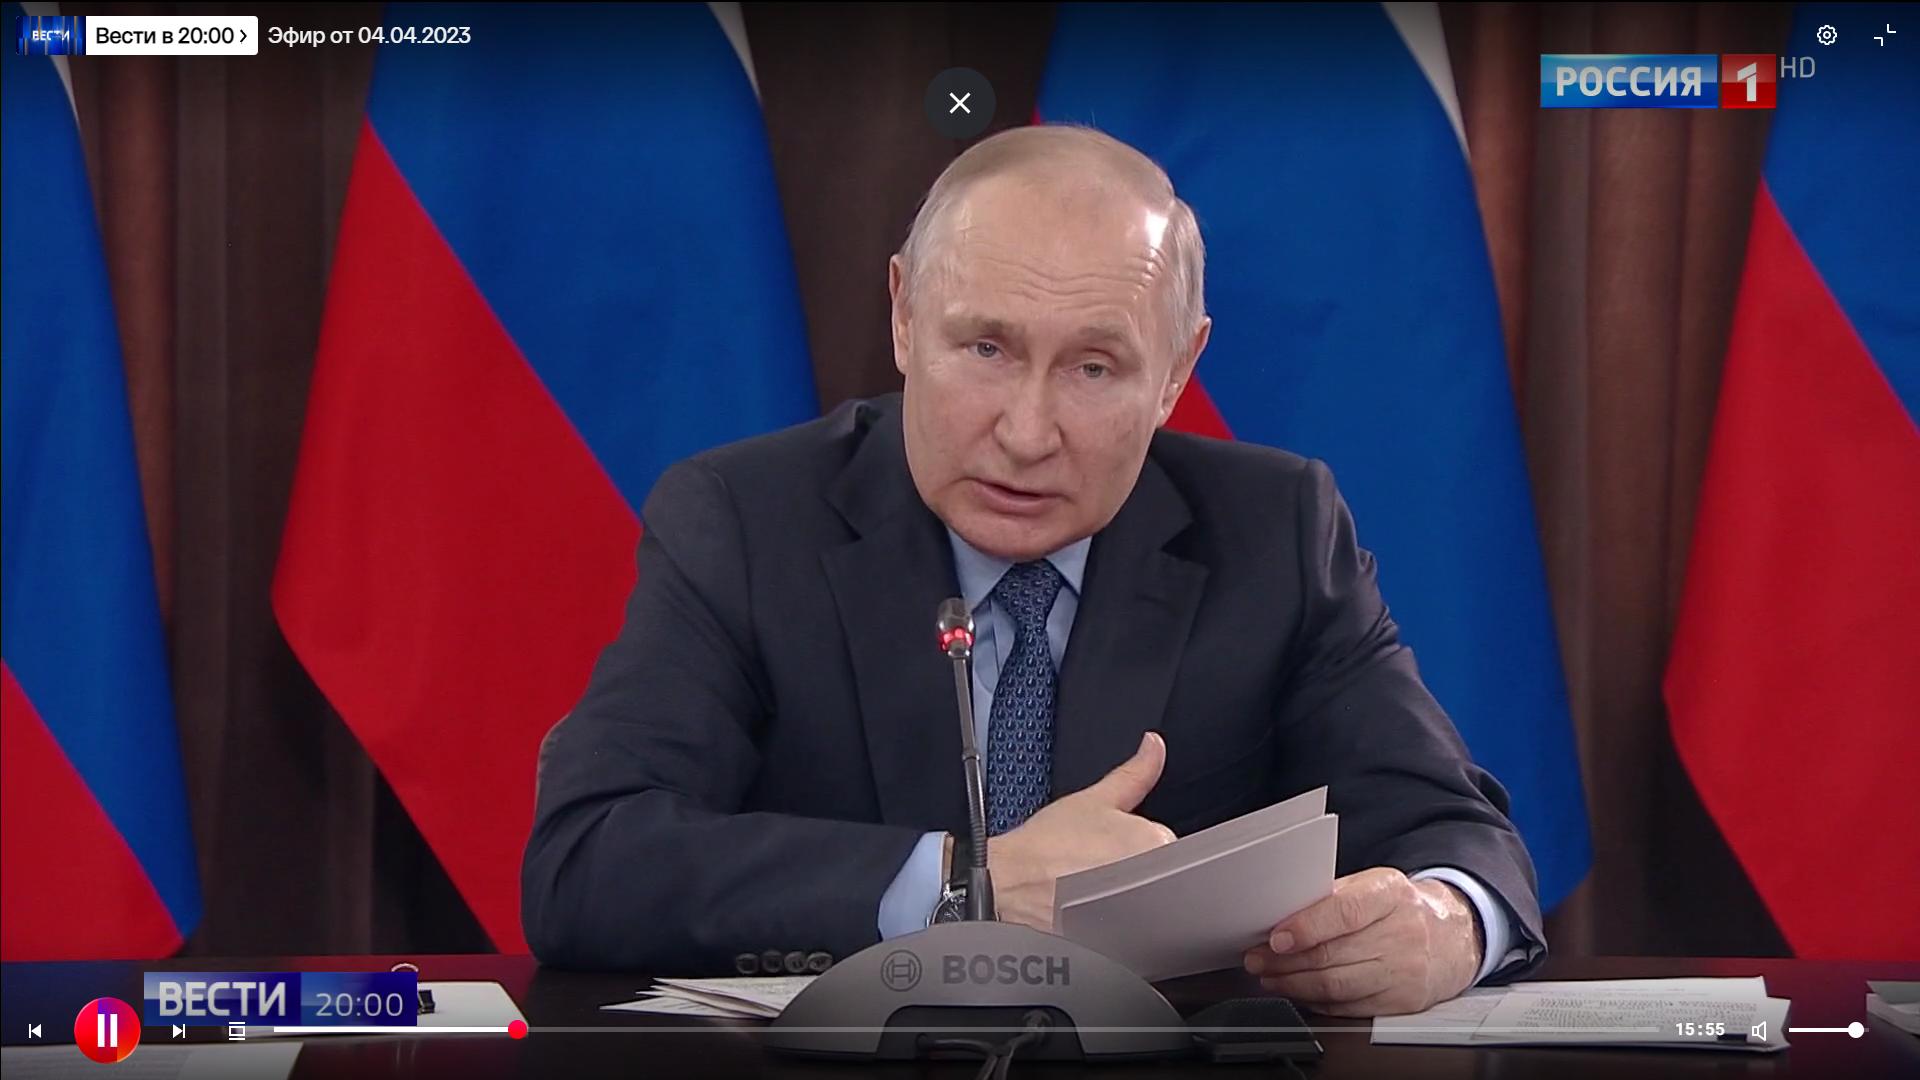 Męzcżyzna w garniturze (Putin) mówi do mikrofonu marki BOSH